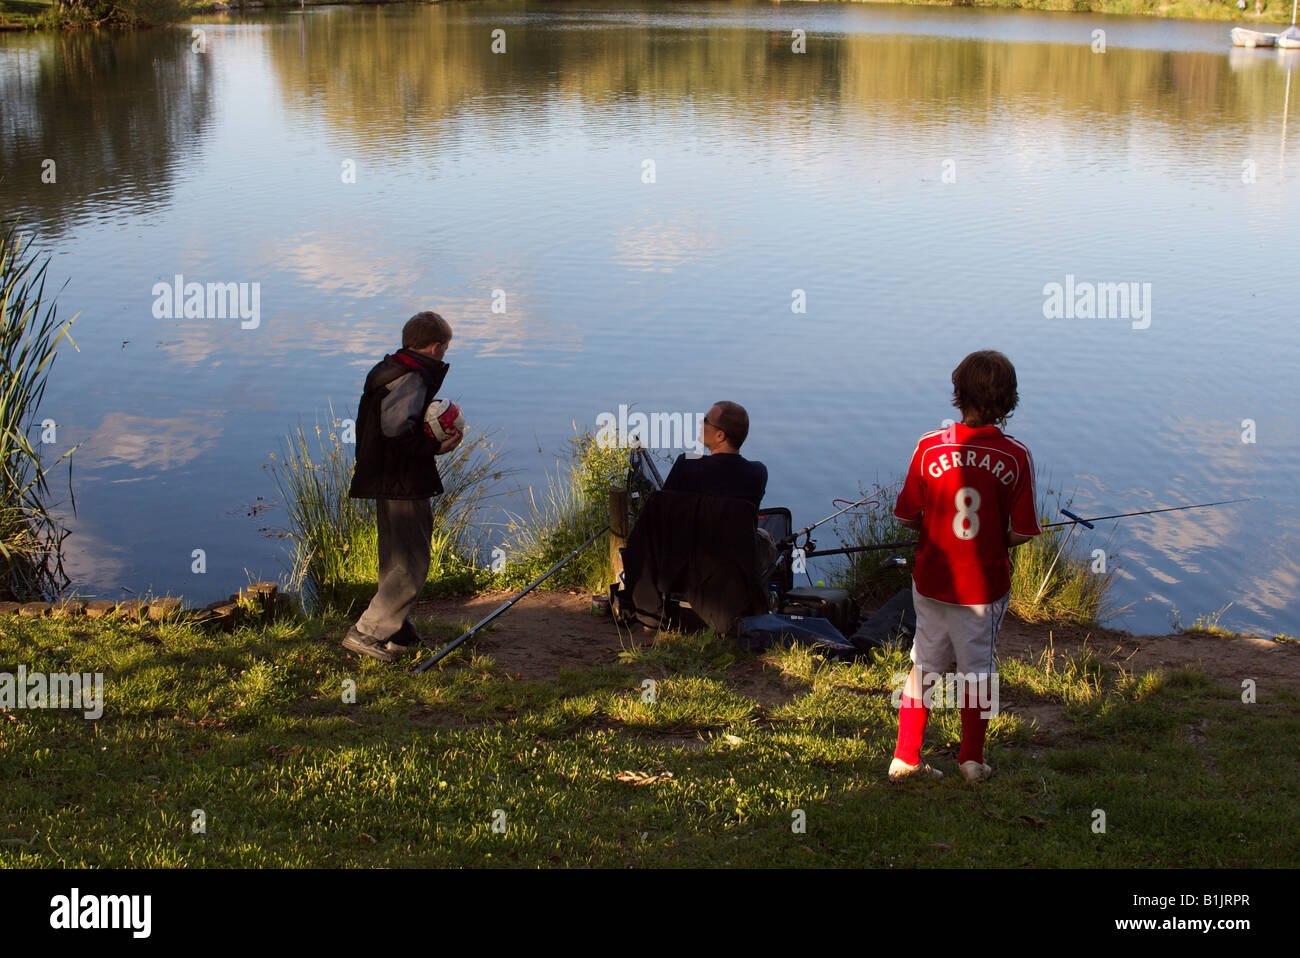 Inghilterra Surrey Woking Goldsworth parco lago pescatore e due ragazzi curiosi uno cercando di mantenere una netta in una partita di football shirt Foto Stock